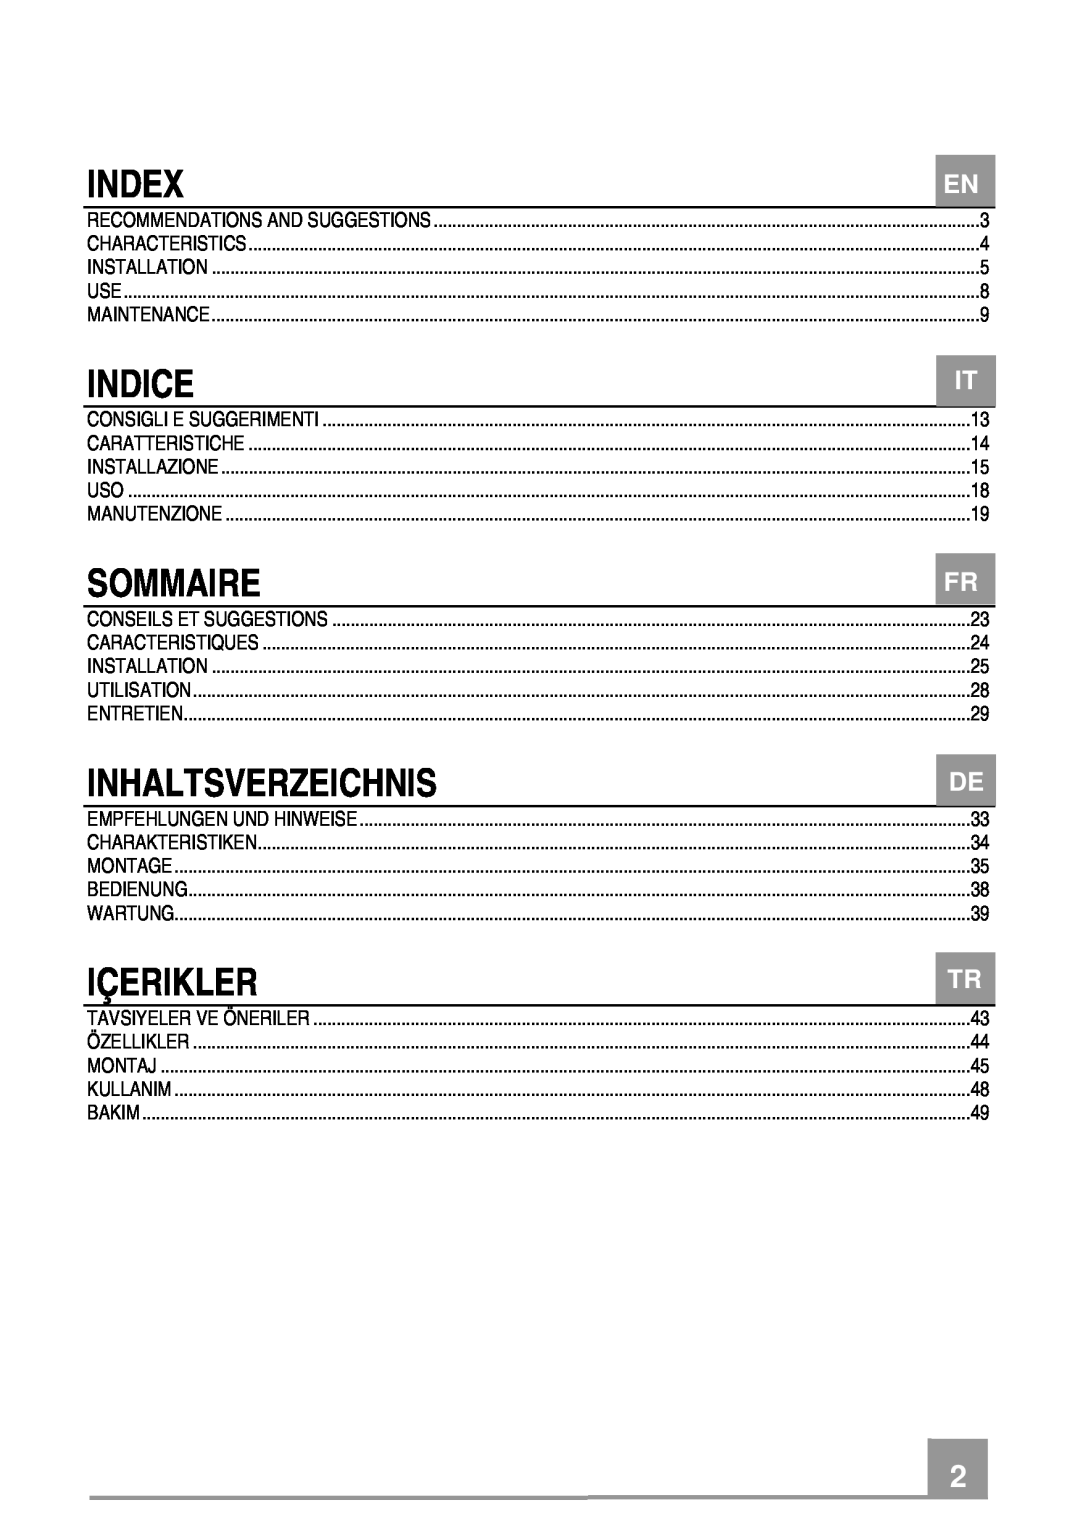 Franke Consumer Products FCR 708-H TC manual Index, Indice, Sommaire, Inhaltsverzeichnis, Içerikler 